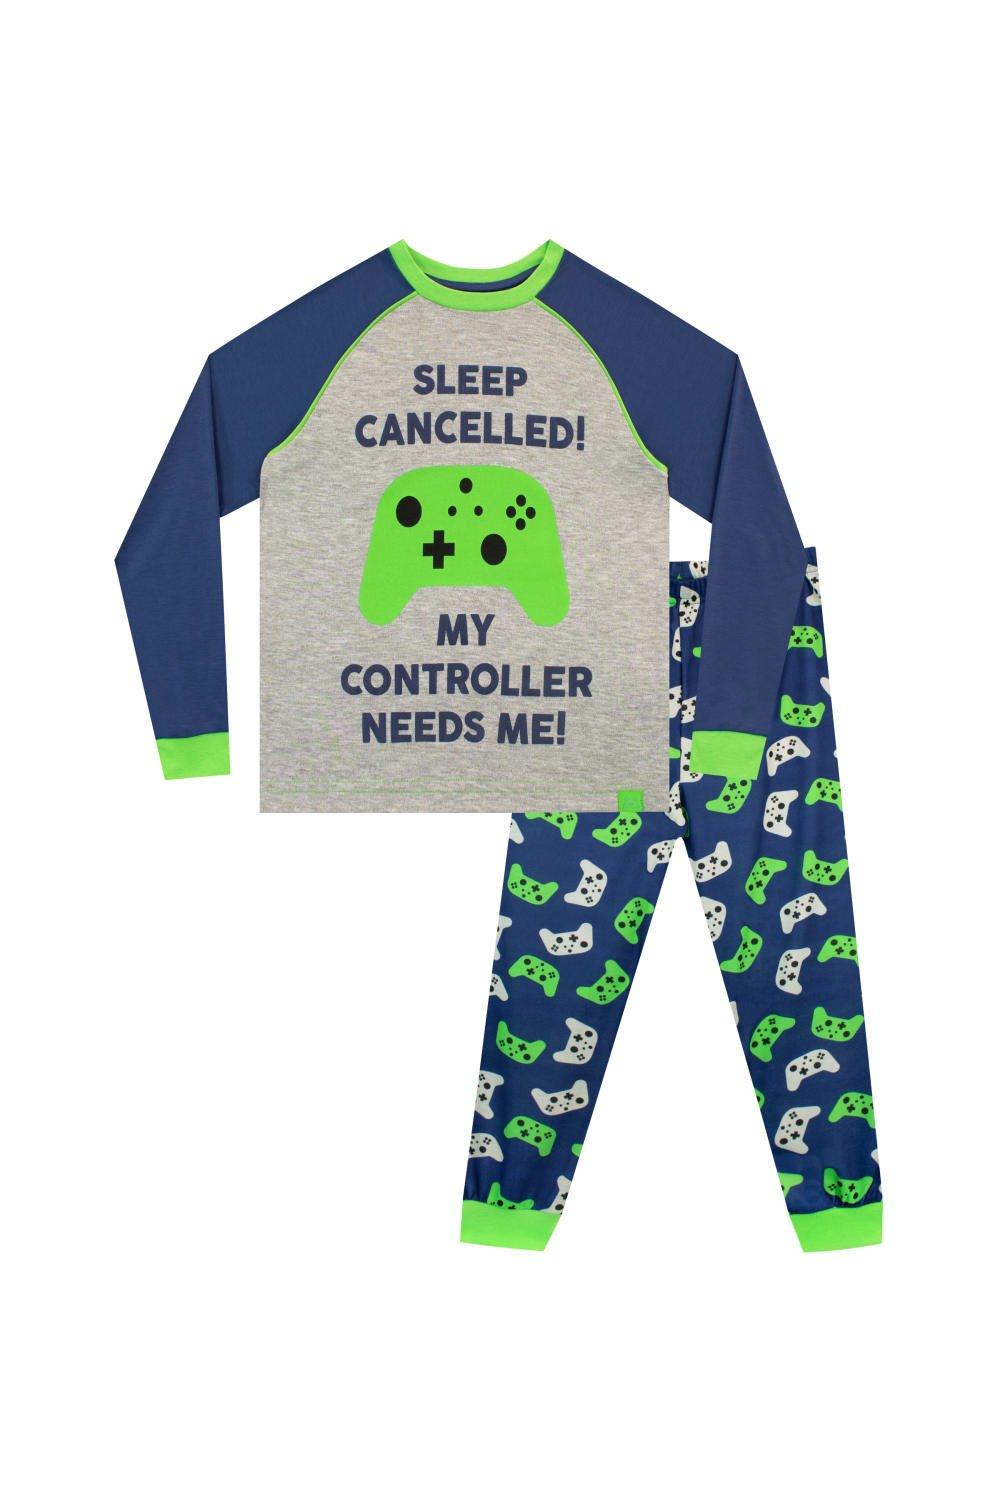 Controller Needs Me Gaming Pyjamas